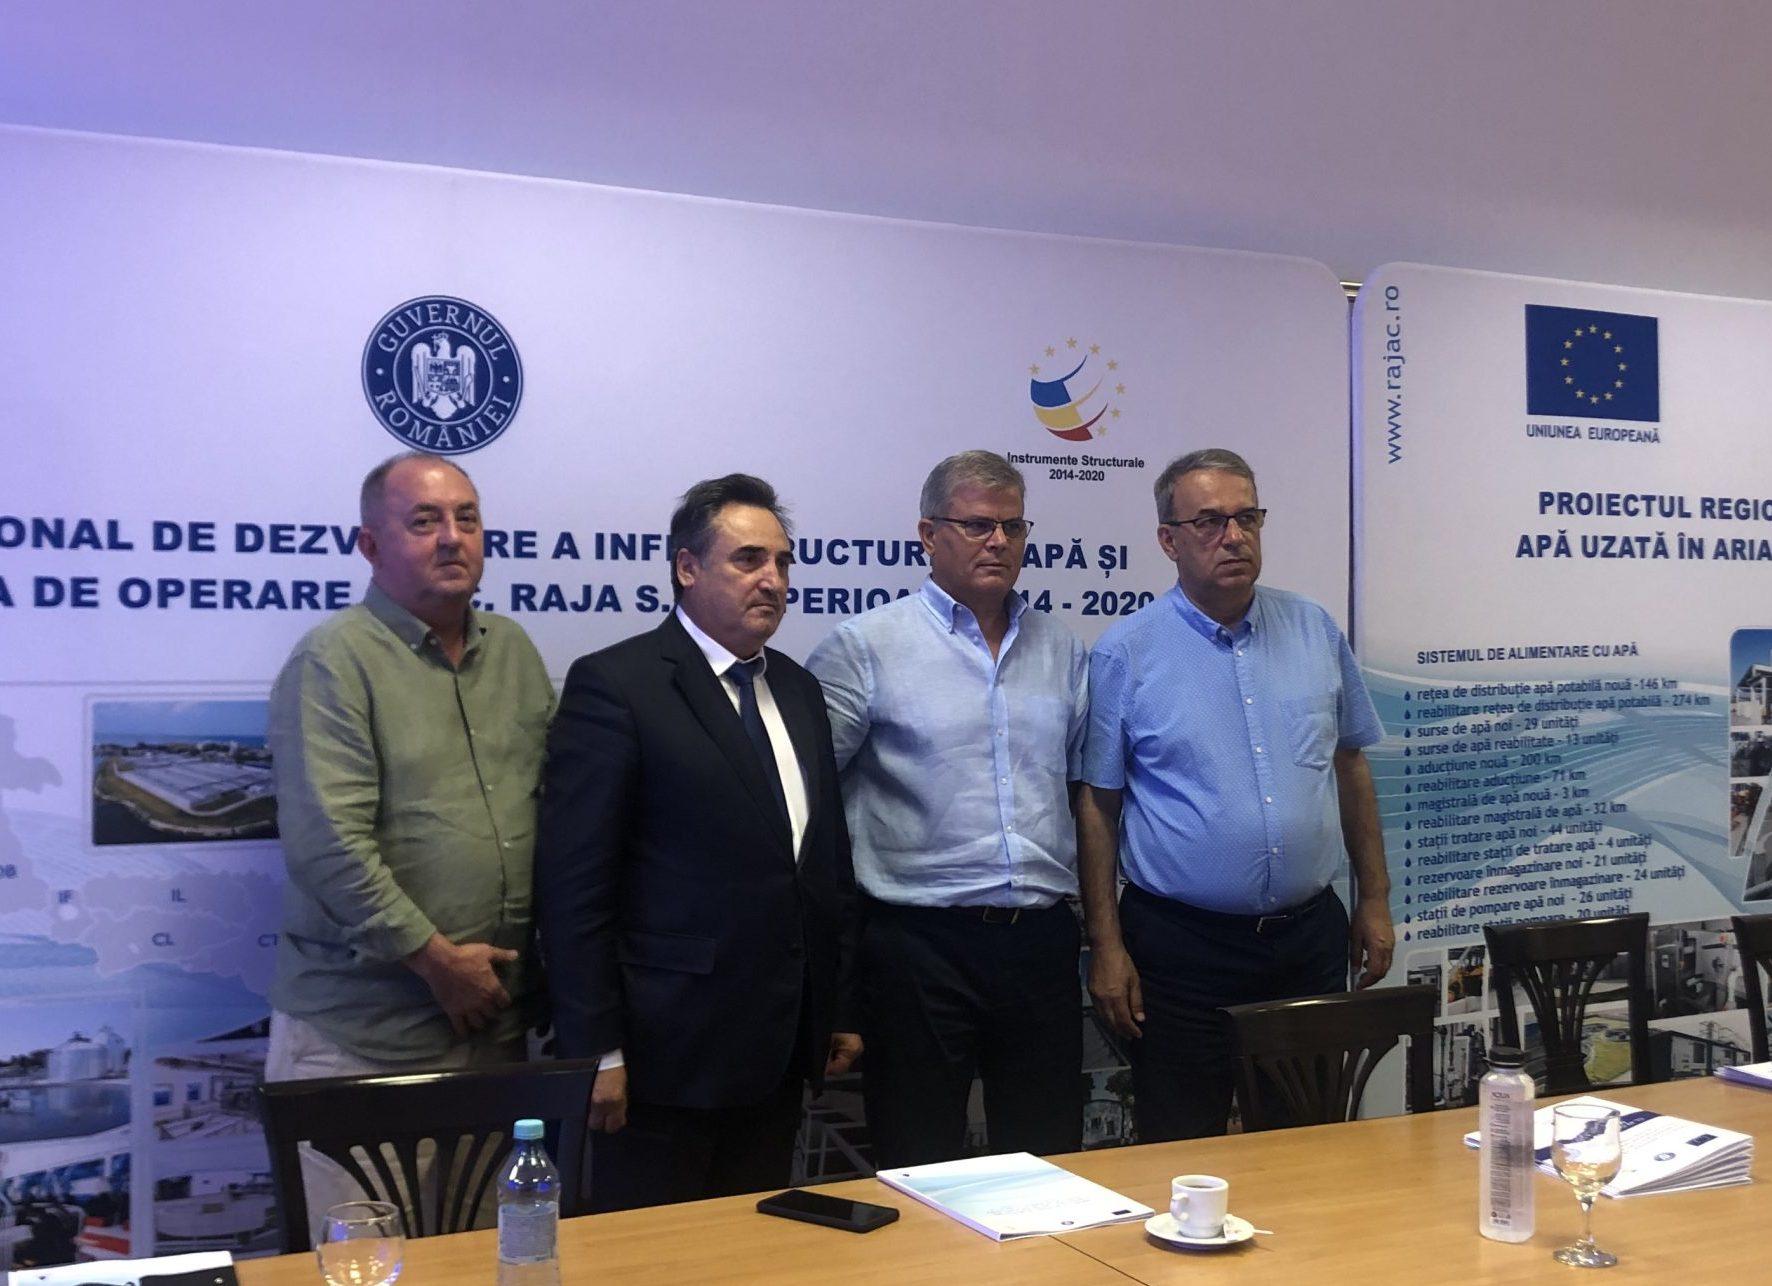 RAJA continuă investițiile cu fonduri europene în infrastructura de apă și apă uzată din județele Constanța și Dâmbovița